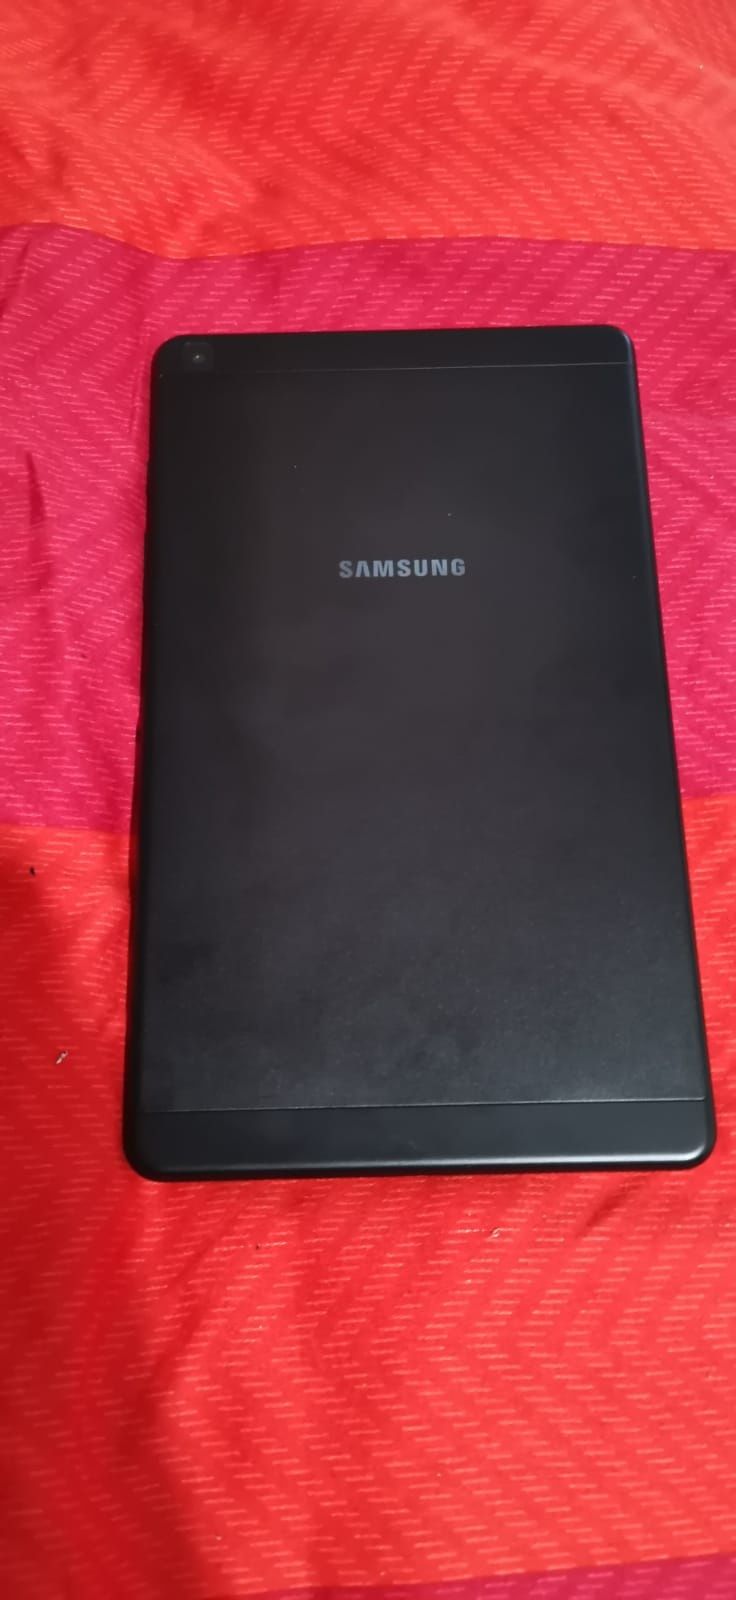 Vând tableta Samsung, nouă, în stare de funcționare foarte bună